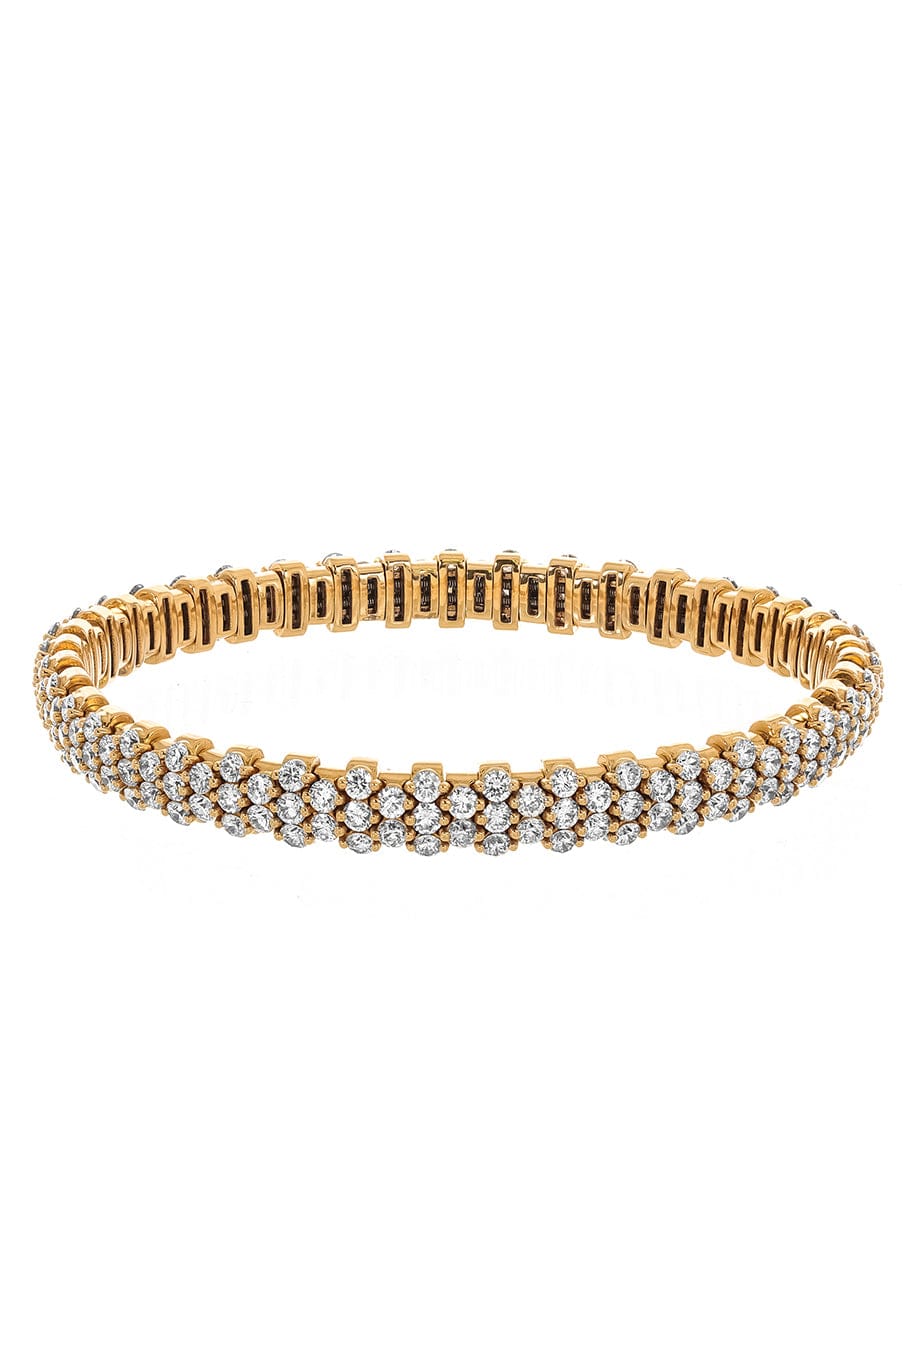 SUTRA-All Diamond Bracelet-ROSE GOLD